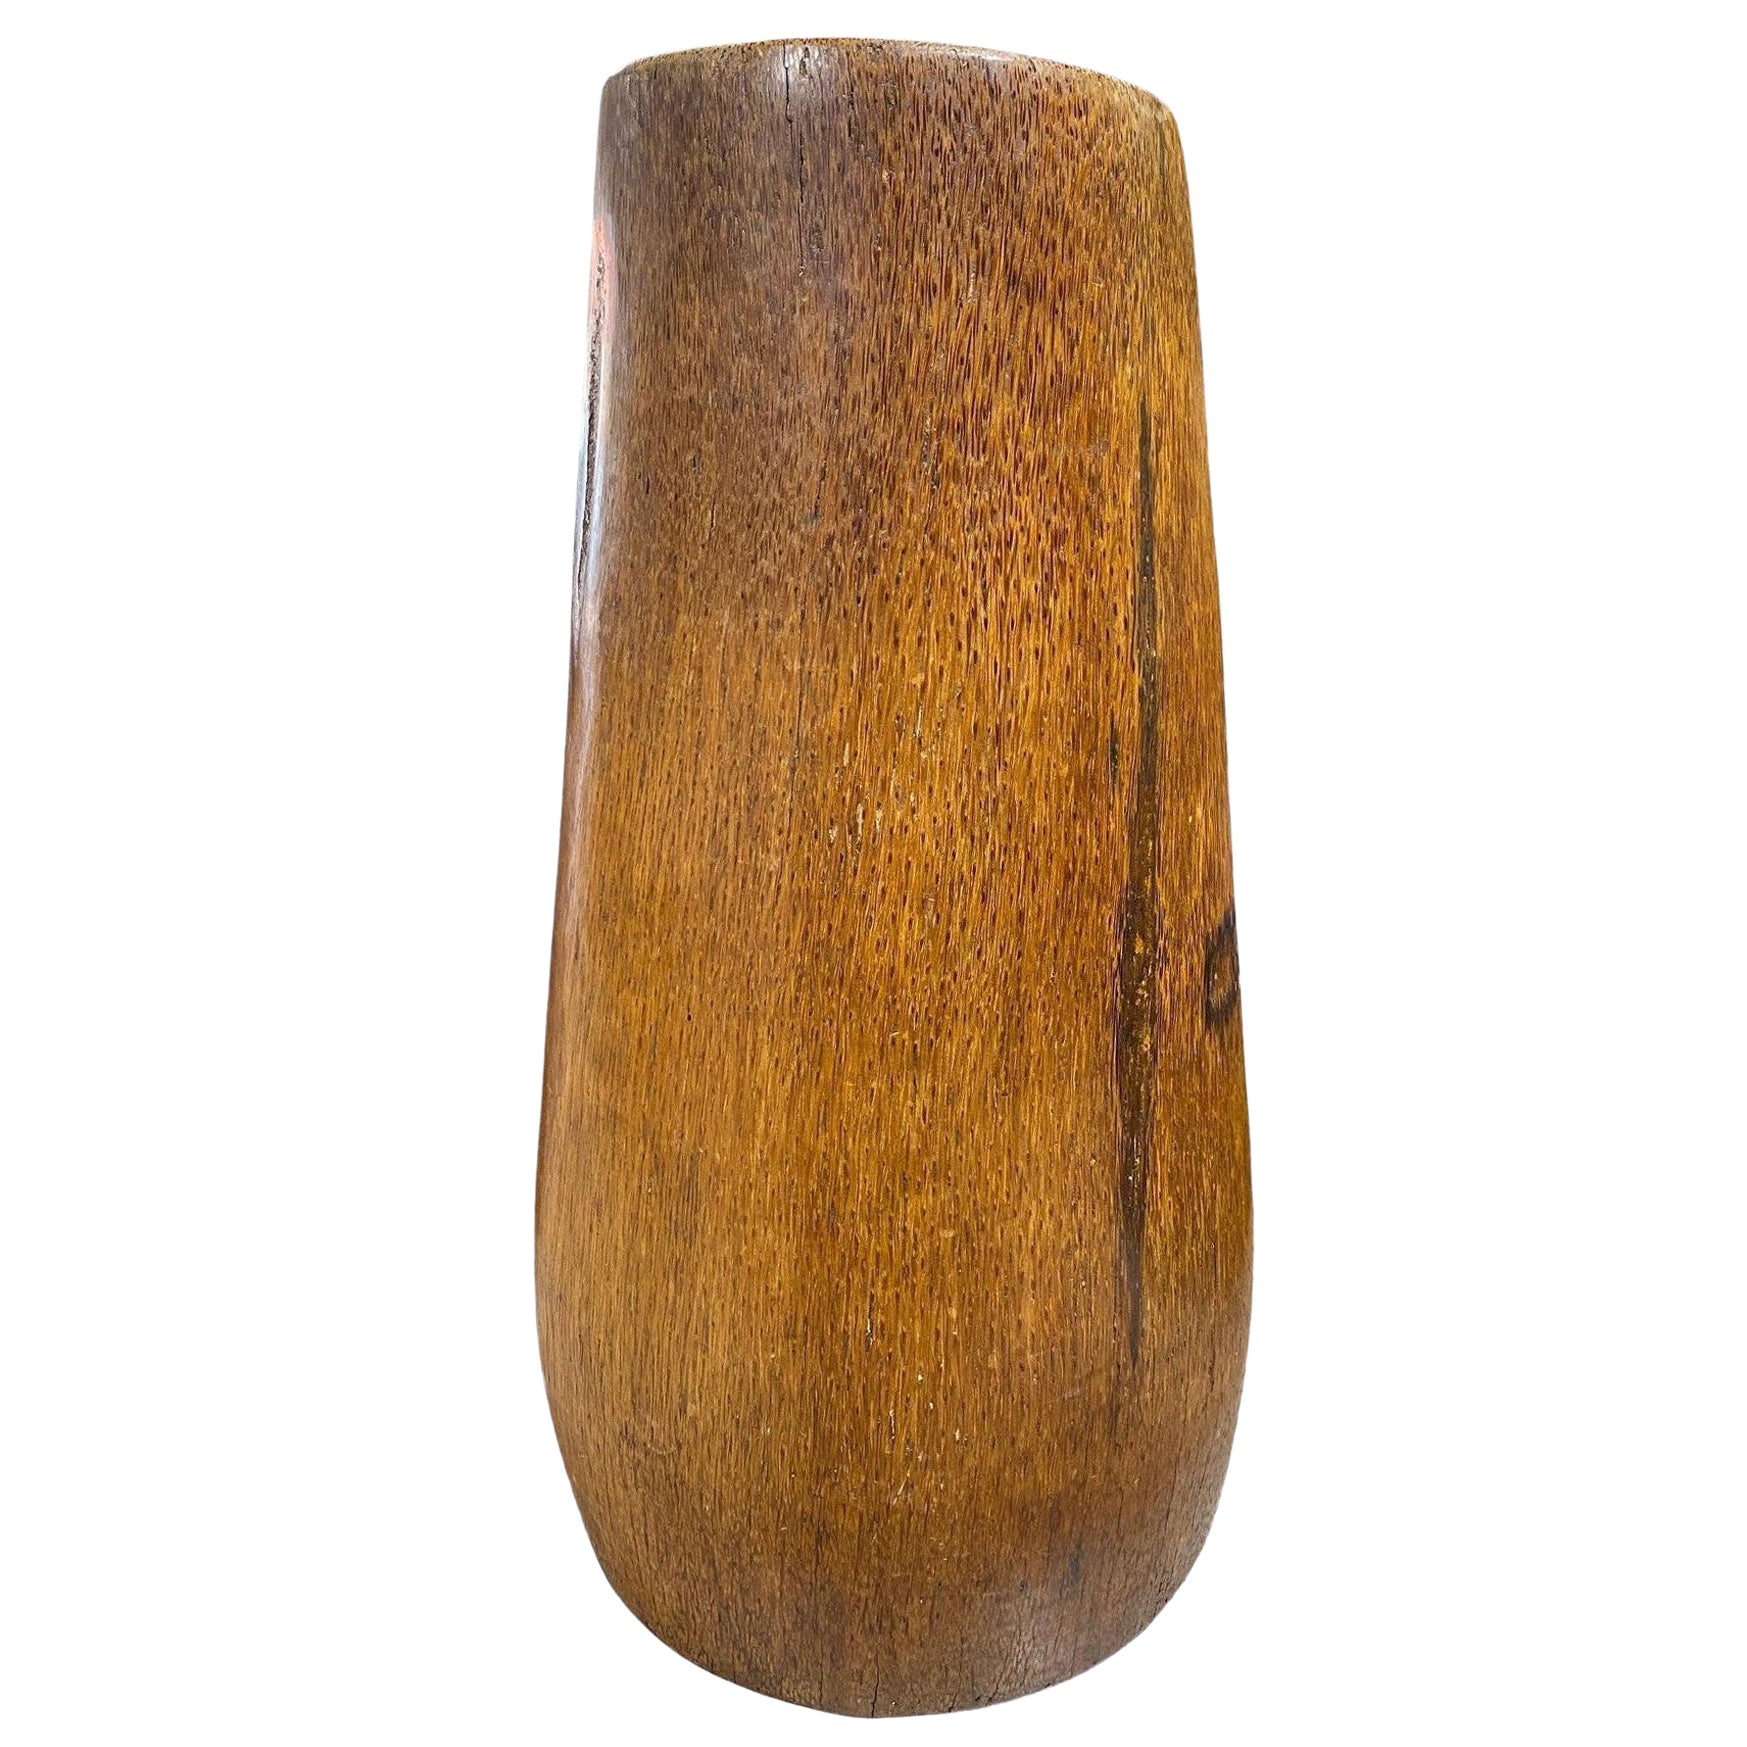 Grand vase en bois de bambou sculpté, spécimen de racine de bambou naturel et organique Wabi-Sabi